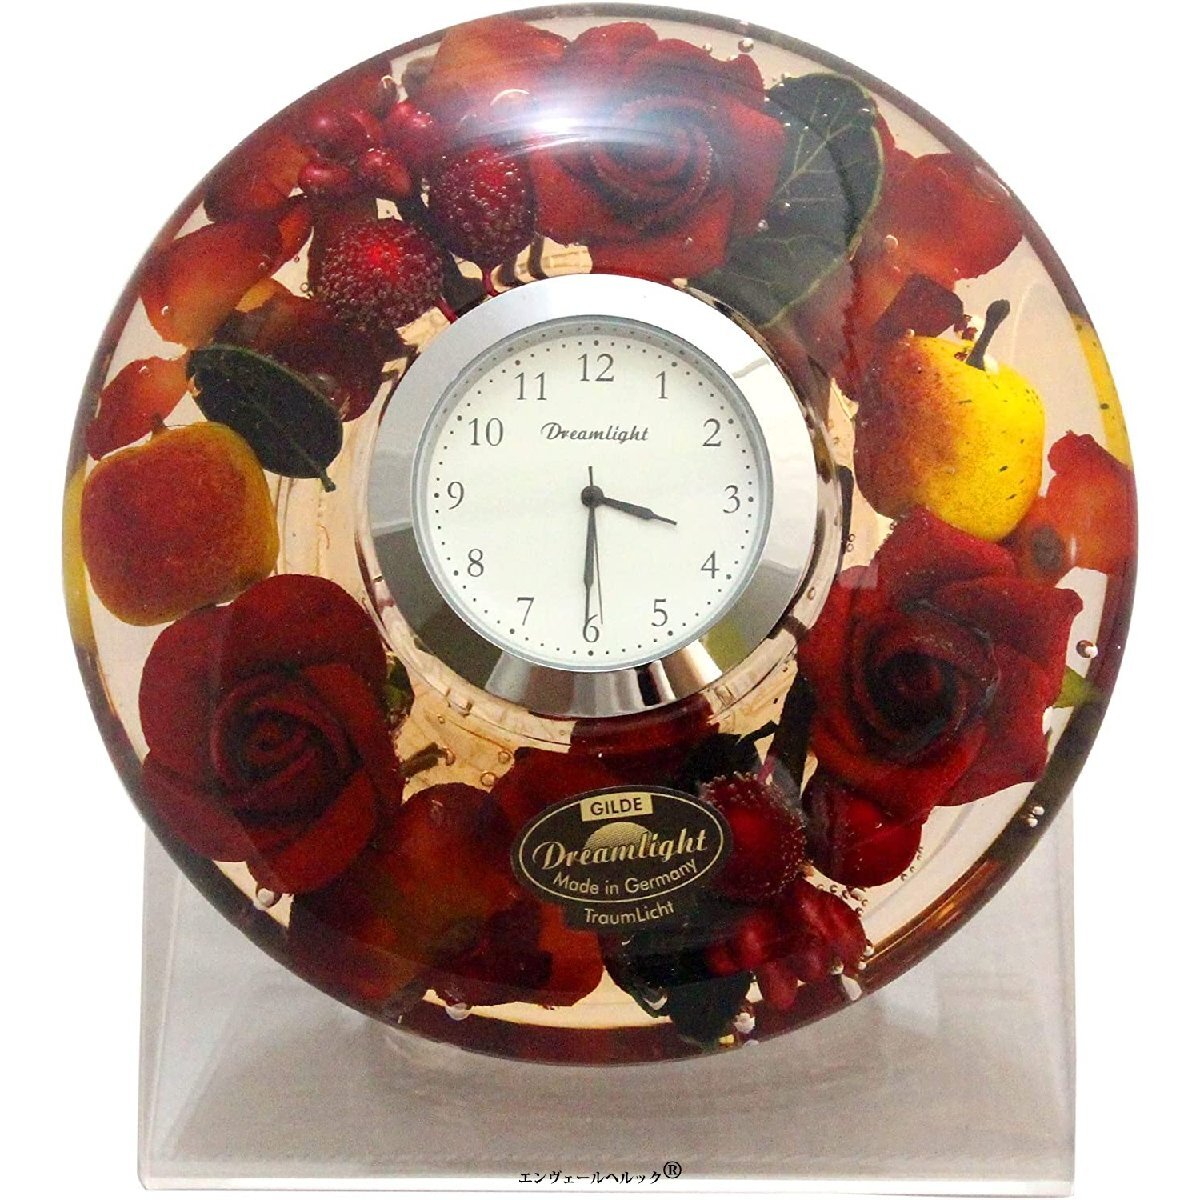 自然情趣座钟, 一个一个手工制作, 直径11 x 高4厘米, 花果, 经典玫瑰与水果搭配, 座钟, 模拟, 一般的